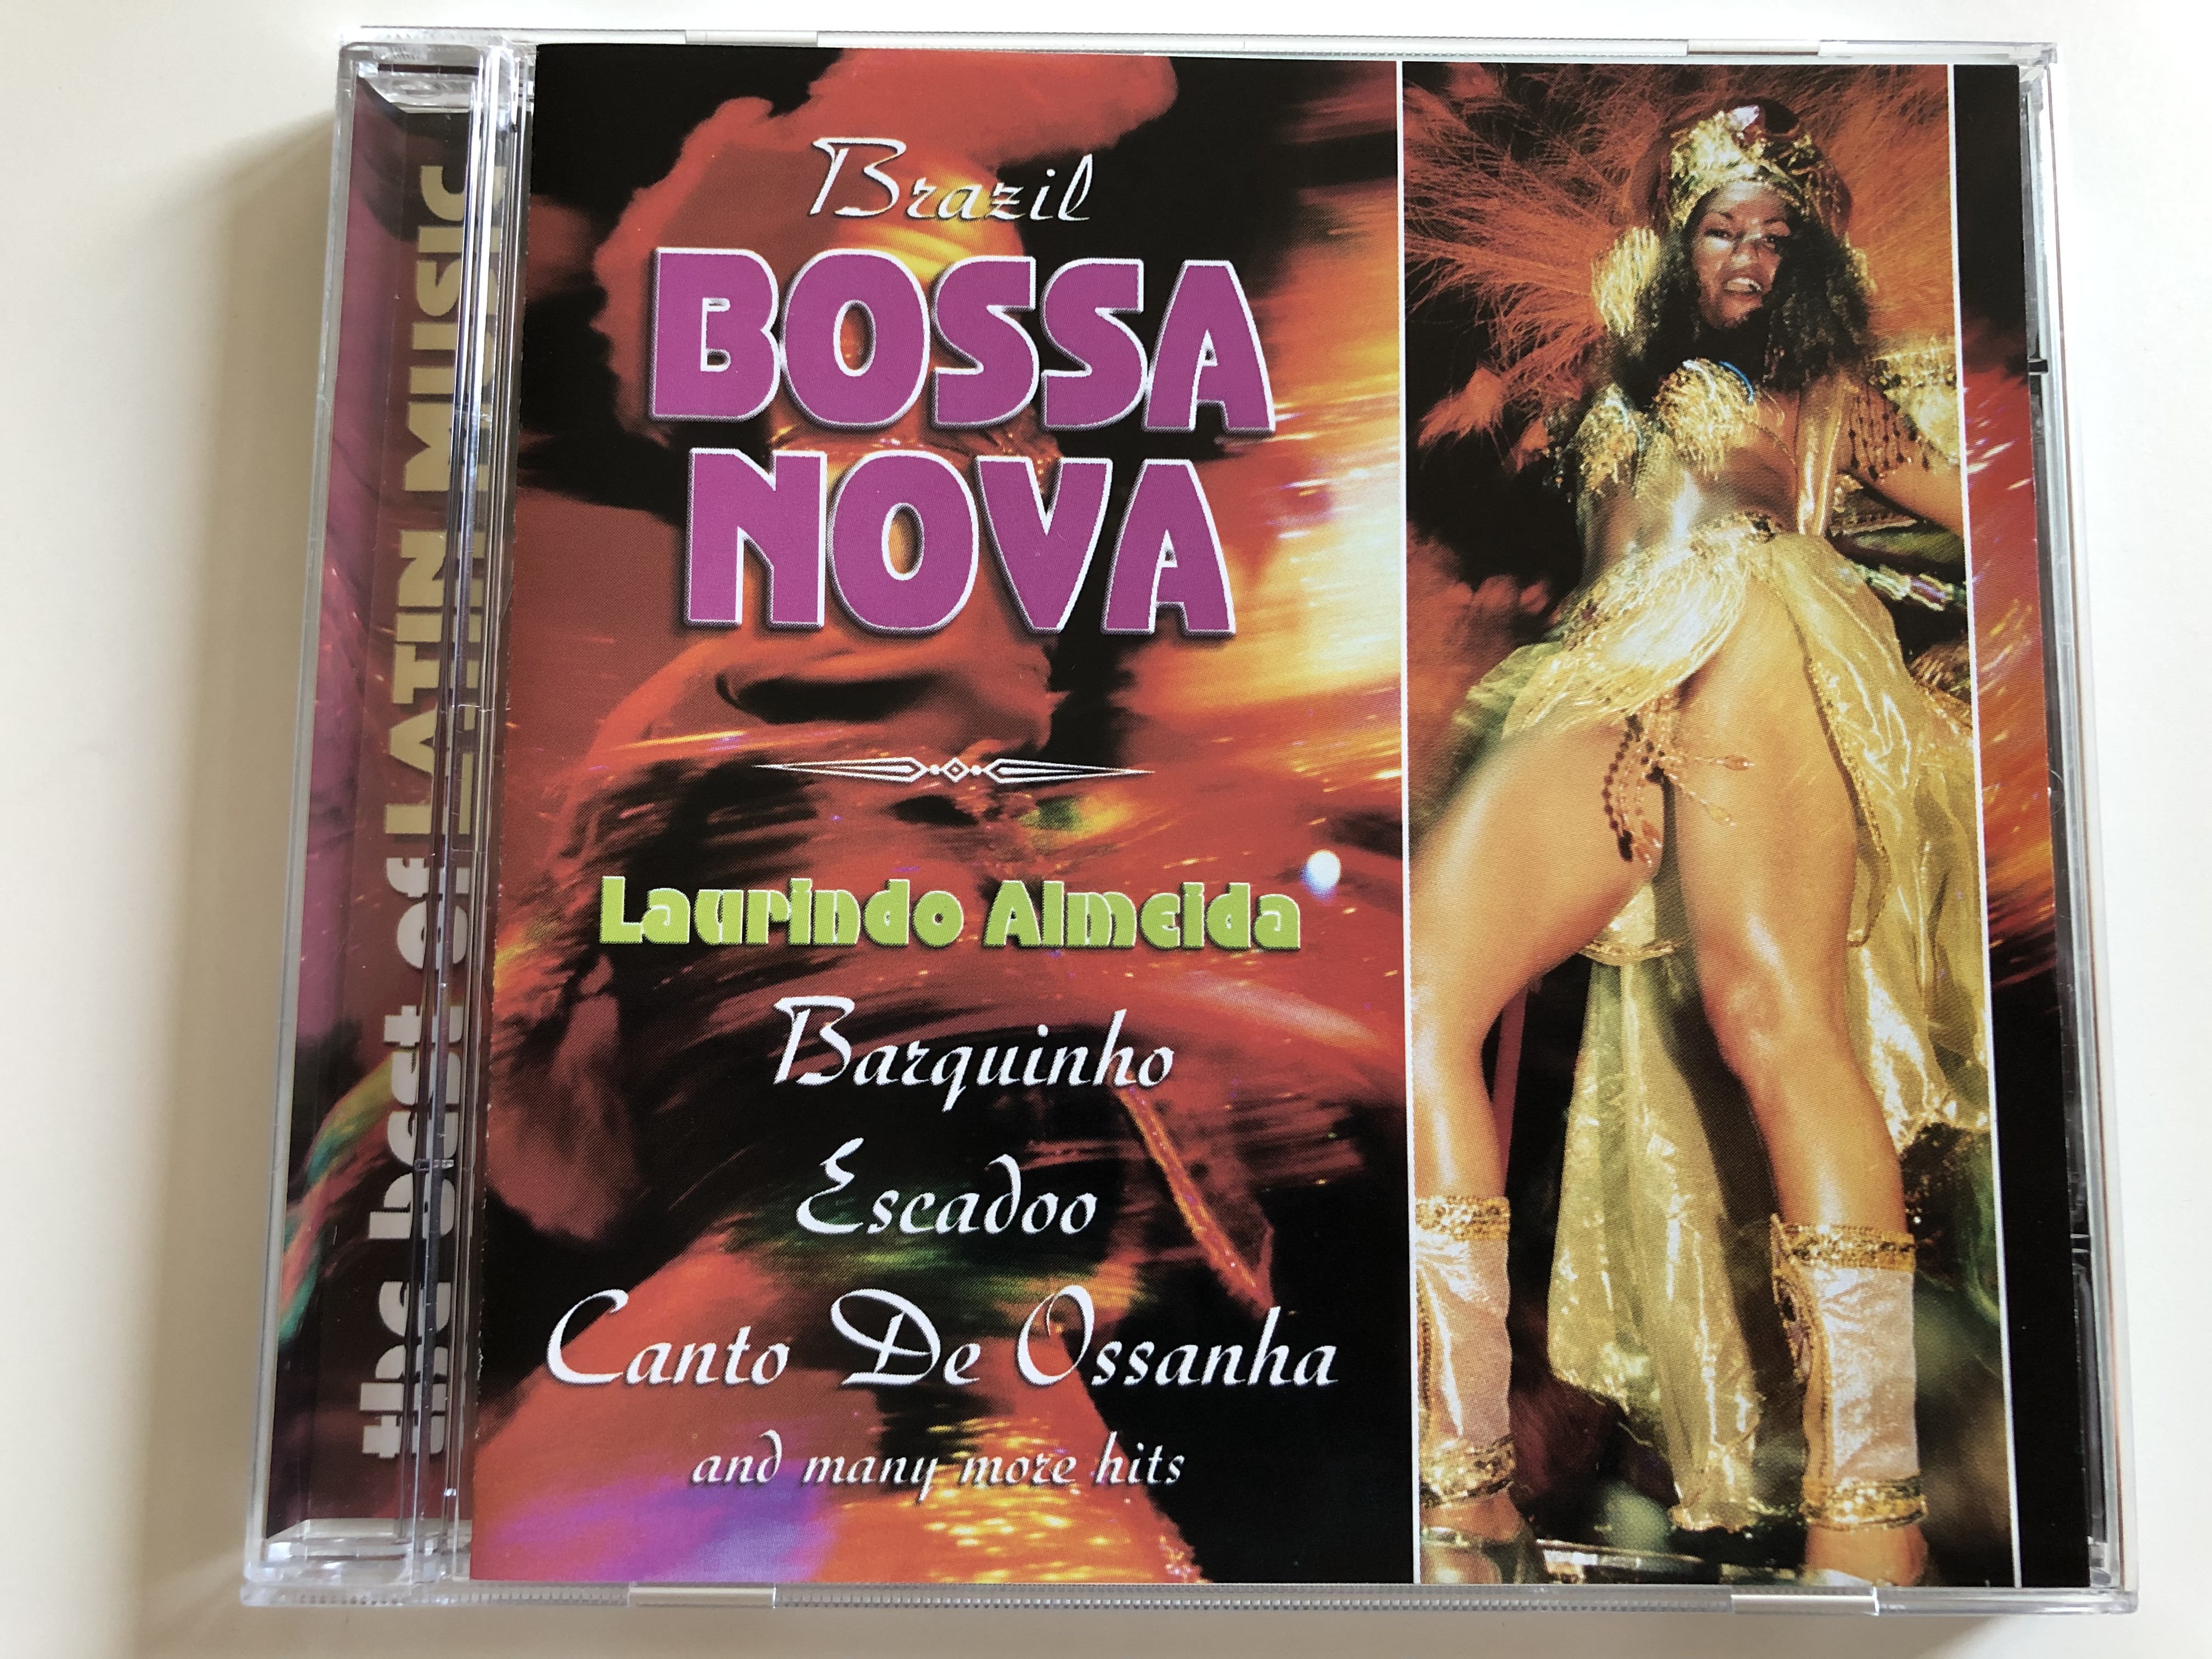 brazil-bossa-nova-laurindo-almeida-barquinho-escadoo-canto-de-ossanha-and-many-more-hits-the-best-of-latin-music-galaxy-music-audio-cd-2003-3808022-1-.jpg